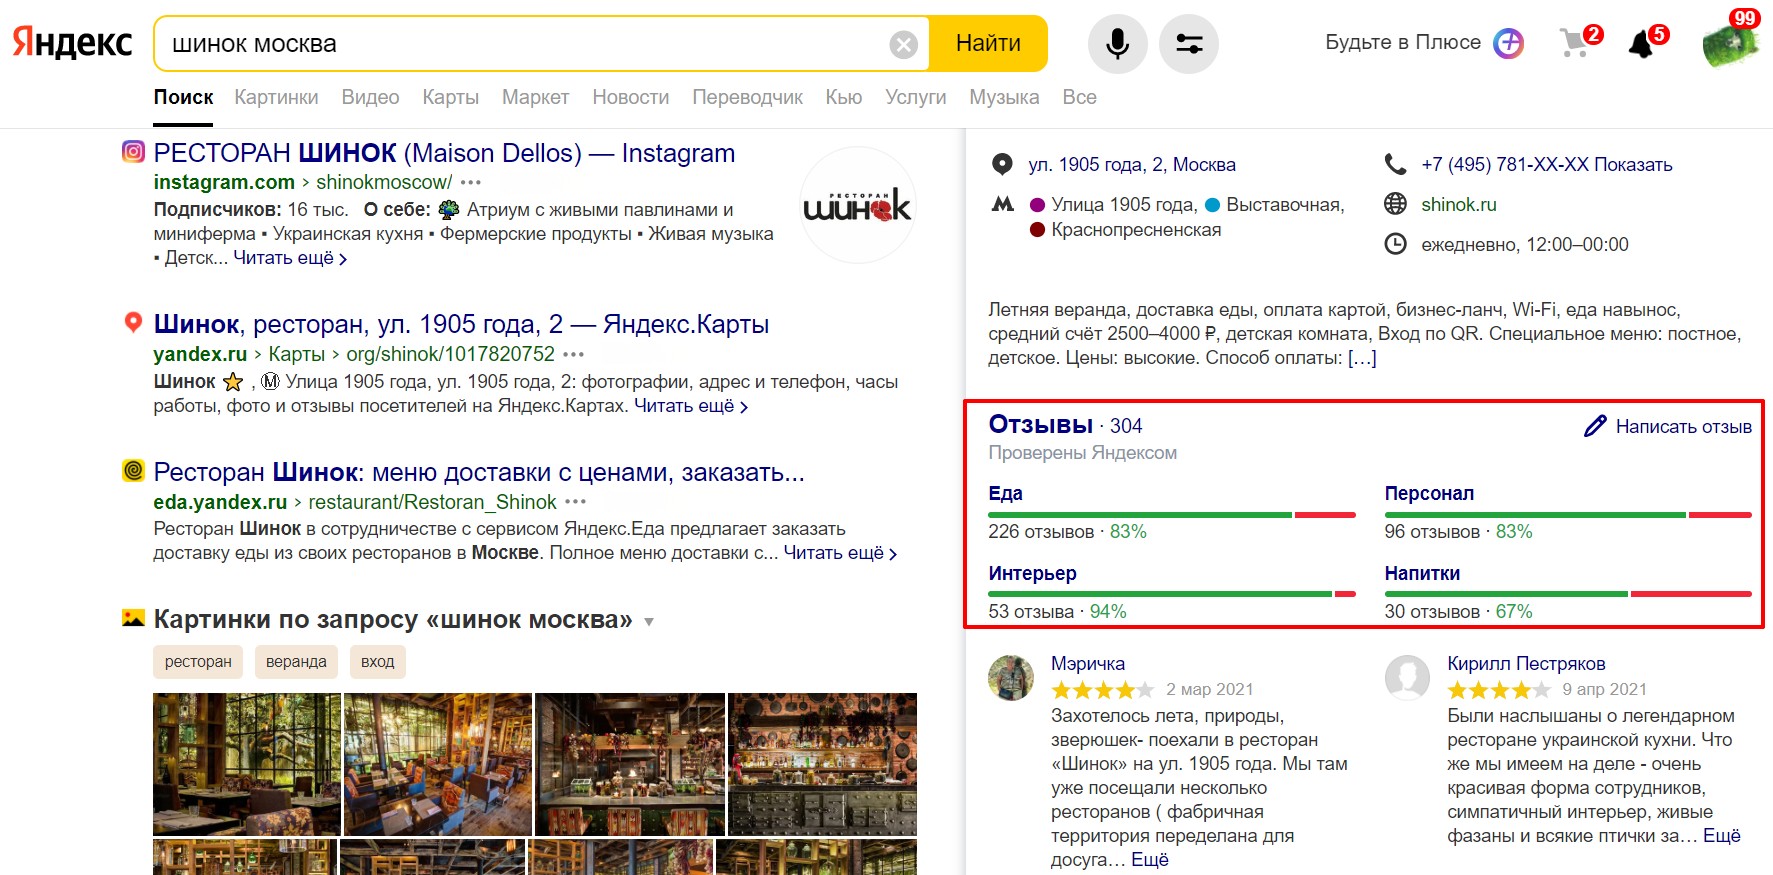 отзывы о компаниях в Яндексе Y1